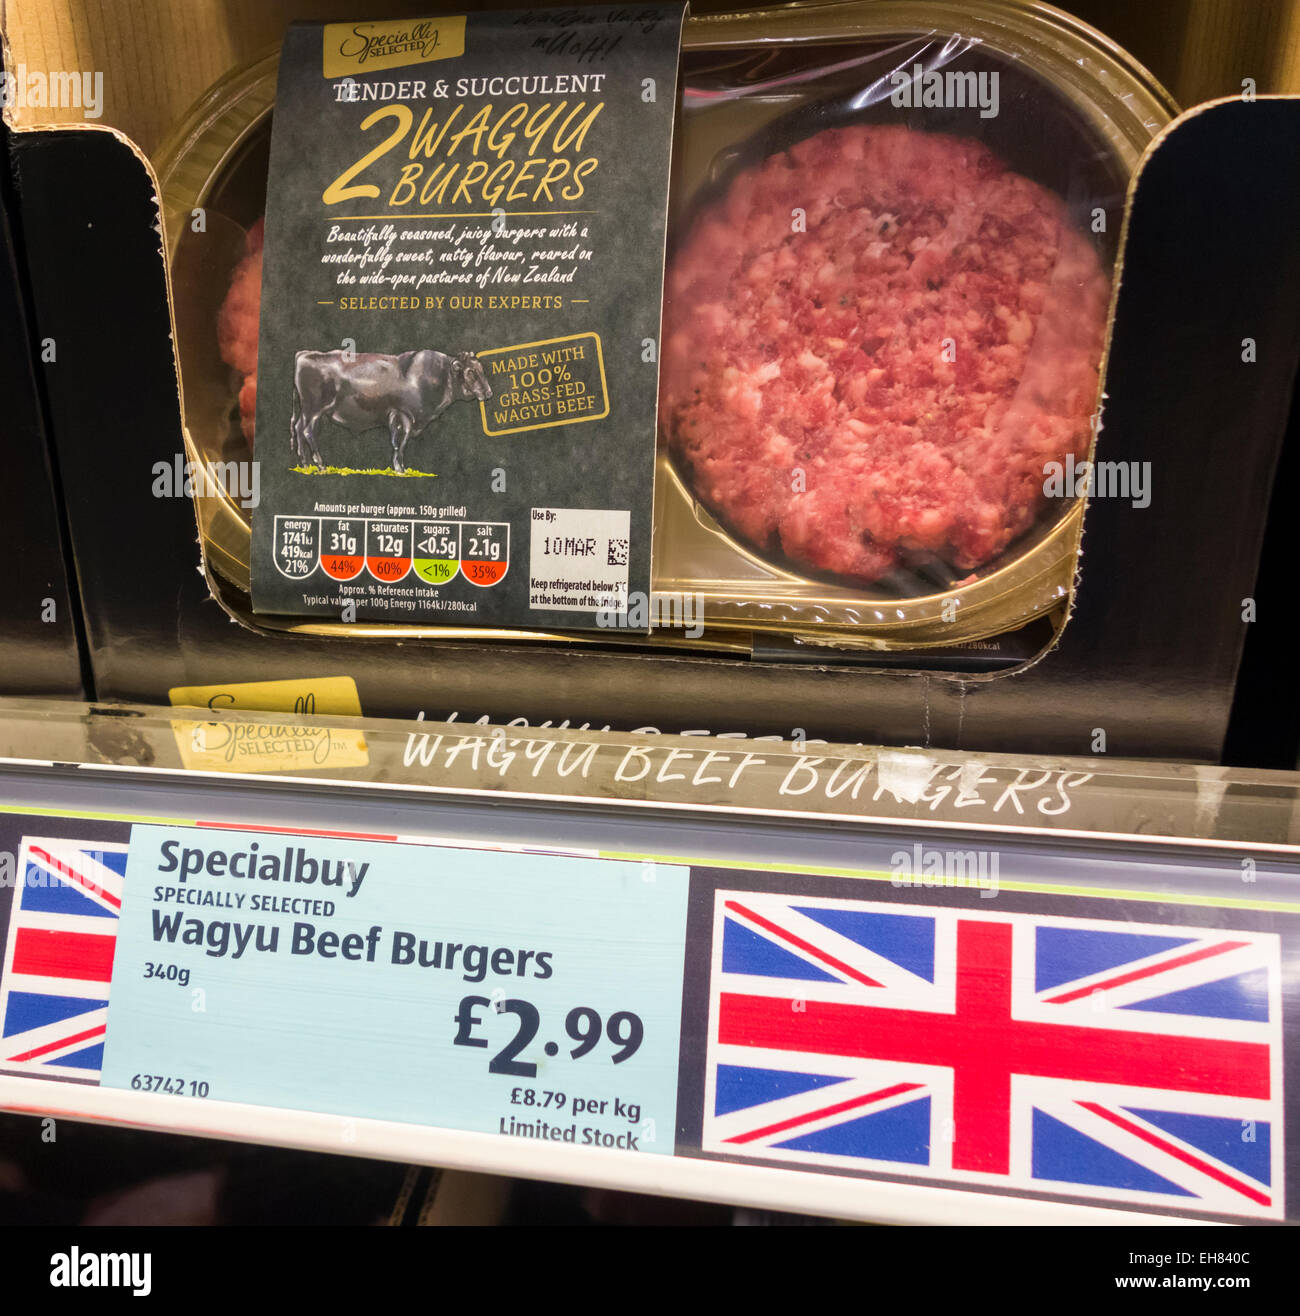 Burgers de Bœuf Wagyu dans des emballages en plastique en supermarché Aldi. L'Angleterre. UK Banque D'Images